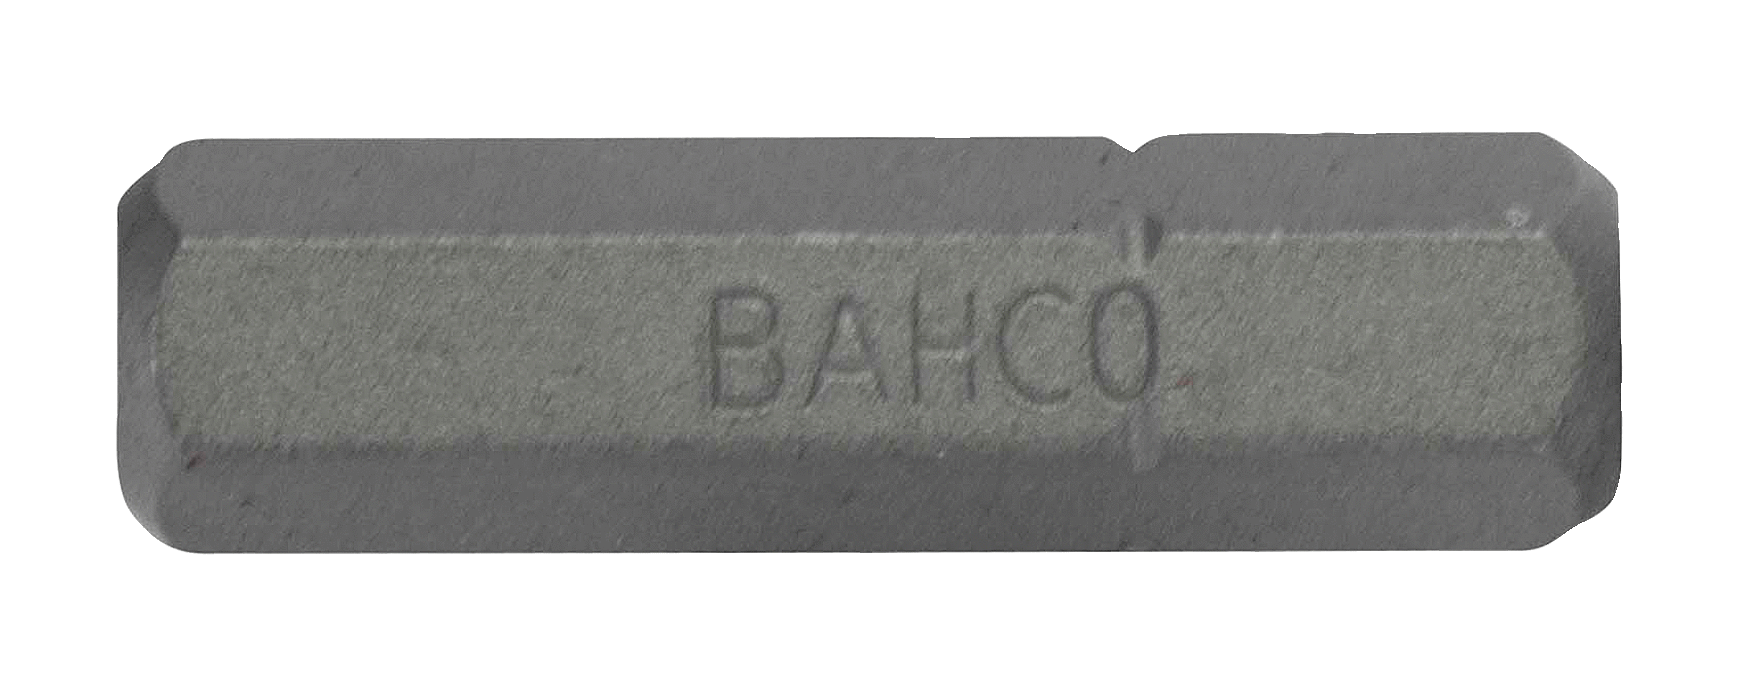 картинка Стандартные биты для отверток под винты с шестигранной головкой, дюймовые размеры, 25 мм BAHCO 59S/H1/8 от магазина "Элит-инструмент"